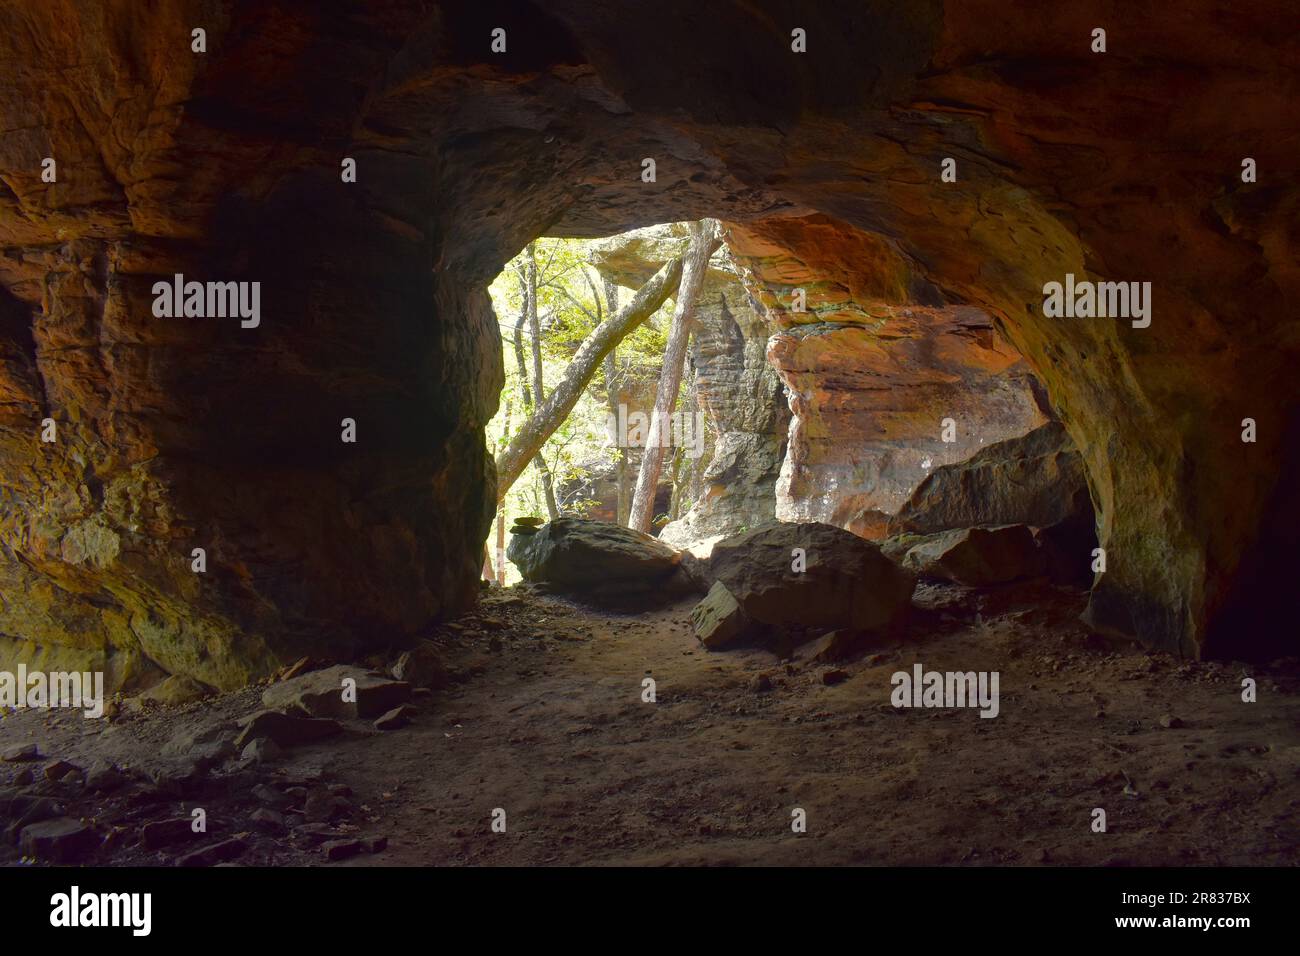 Aus einigen Öffnungen in den Höhlen von Pedestal Rocks, Pelsor, Sand Gap, Witts Springs, Arkansas, Ozark-St. Francis National Forest Stockfoto